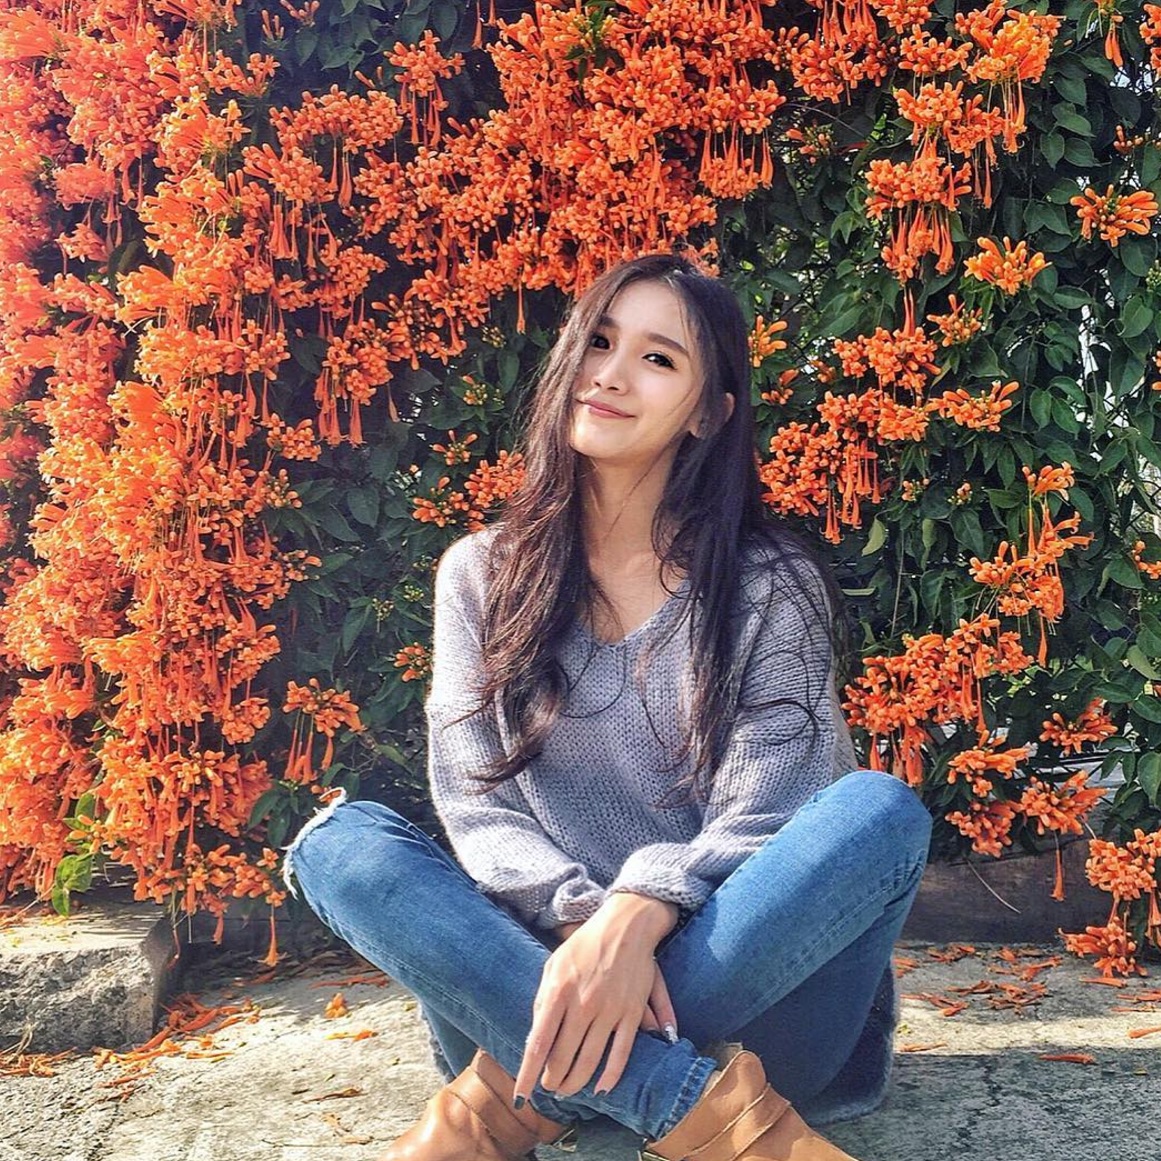 Hot girl Instagram Đài Loan khoe mặt xinh, dáng chuẩn ngắm mãi chả thấy chán! - Ảnh 6.